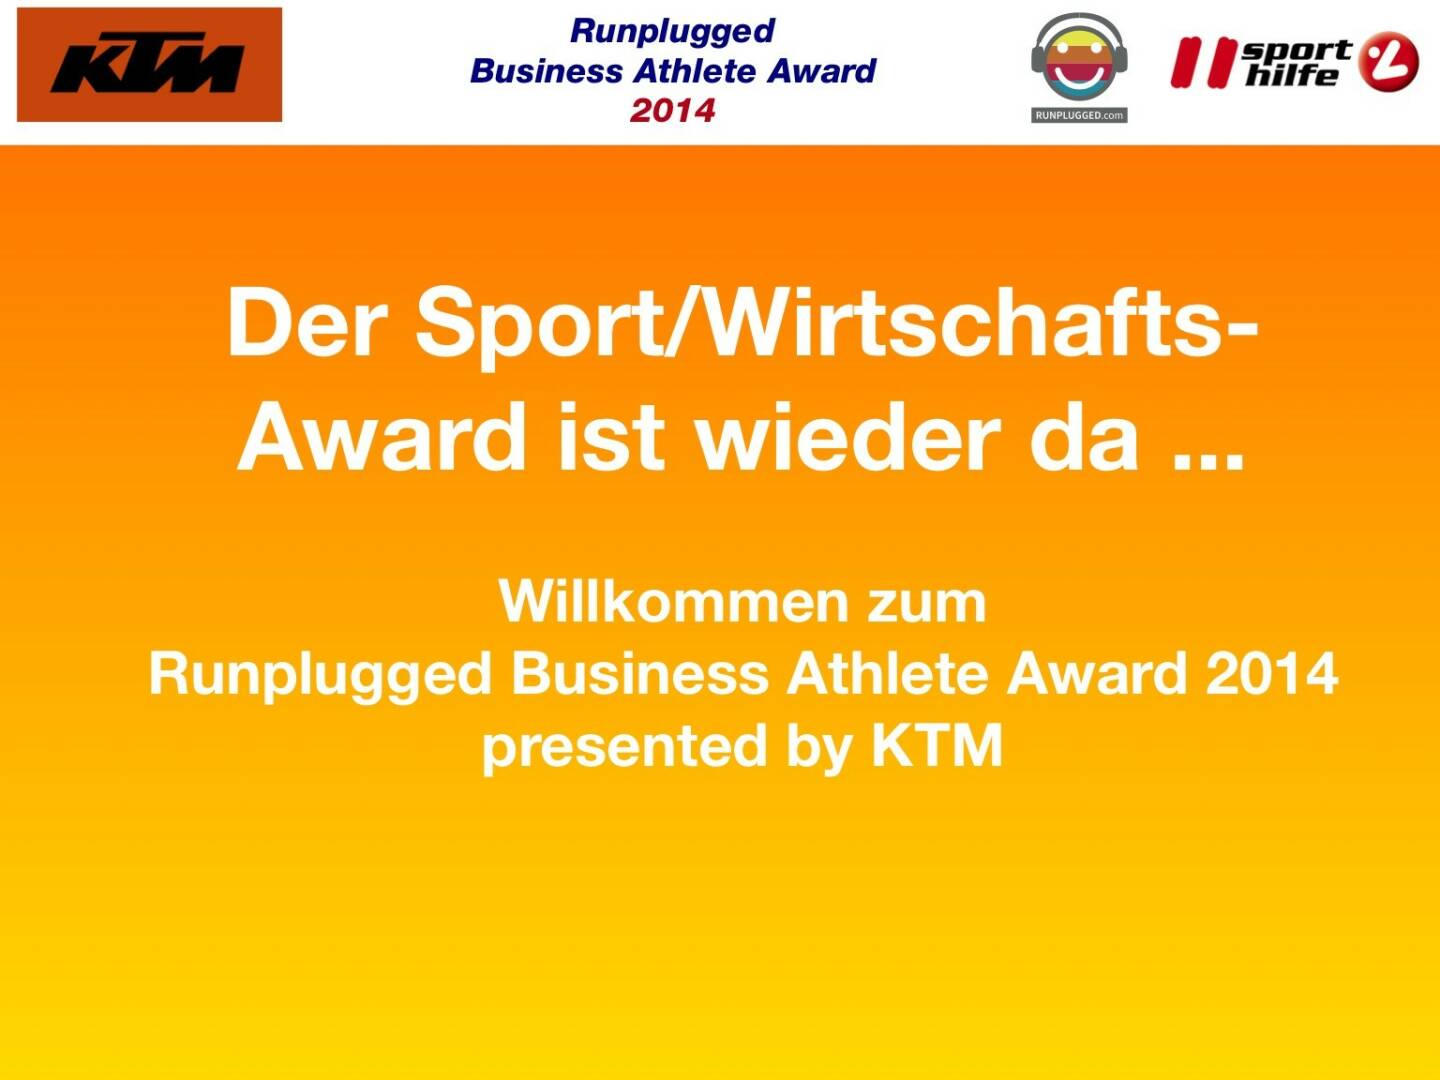 Der Sport/Wirtschafts-Award ist wieder da ... Willkommen zum Runplugged Business Athlete Award 2014 presented by KTM 